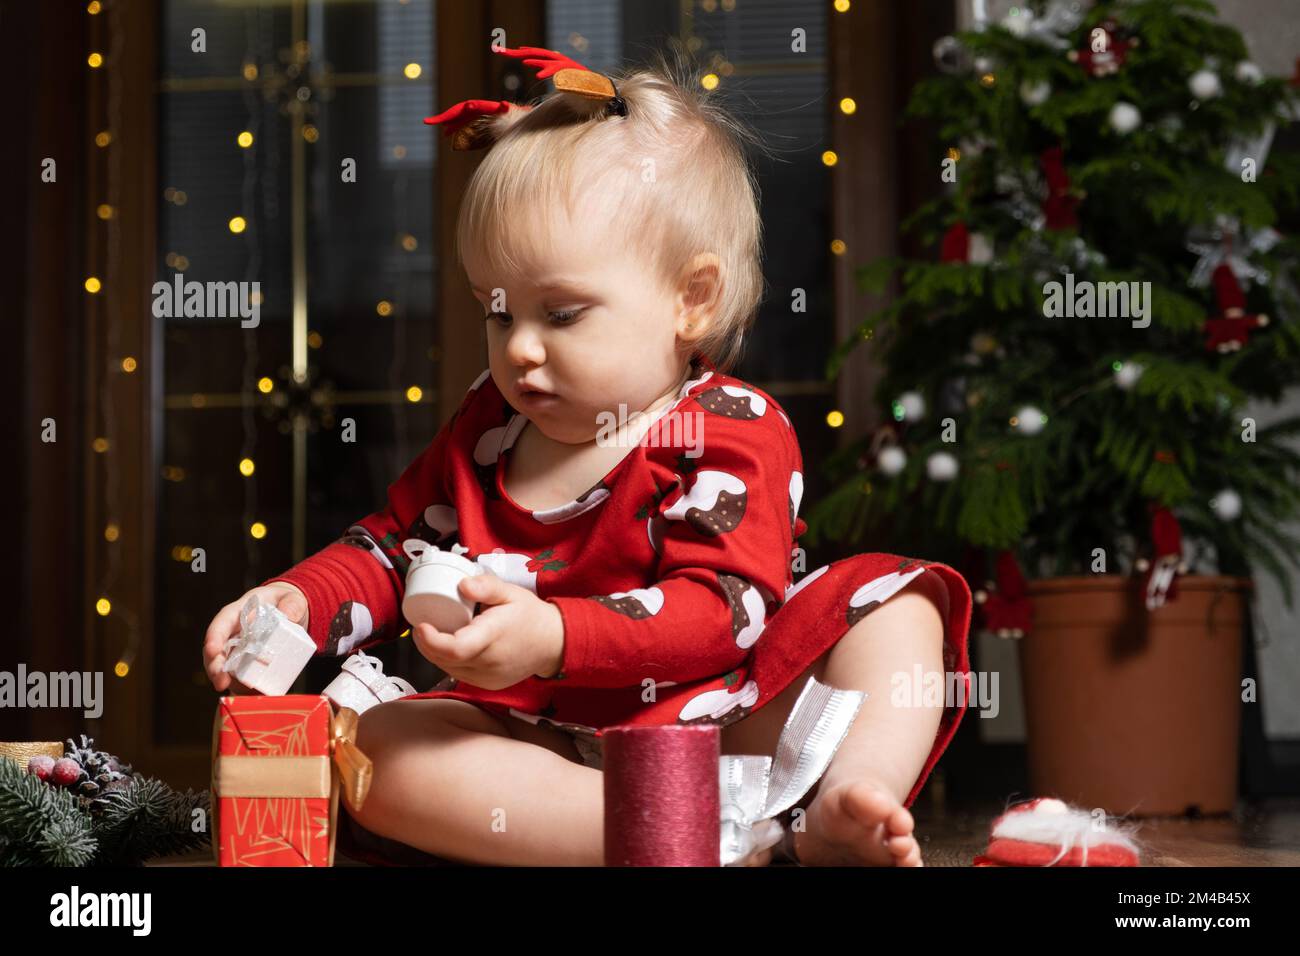 Belle petite fille d'un an avec des cheveux blonds jouant des cadeaux de Noël. Guirlande de bokeh. Les enfants et la veille du nouvel an Banque D'Images